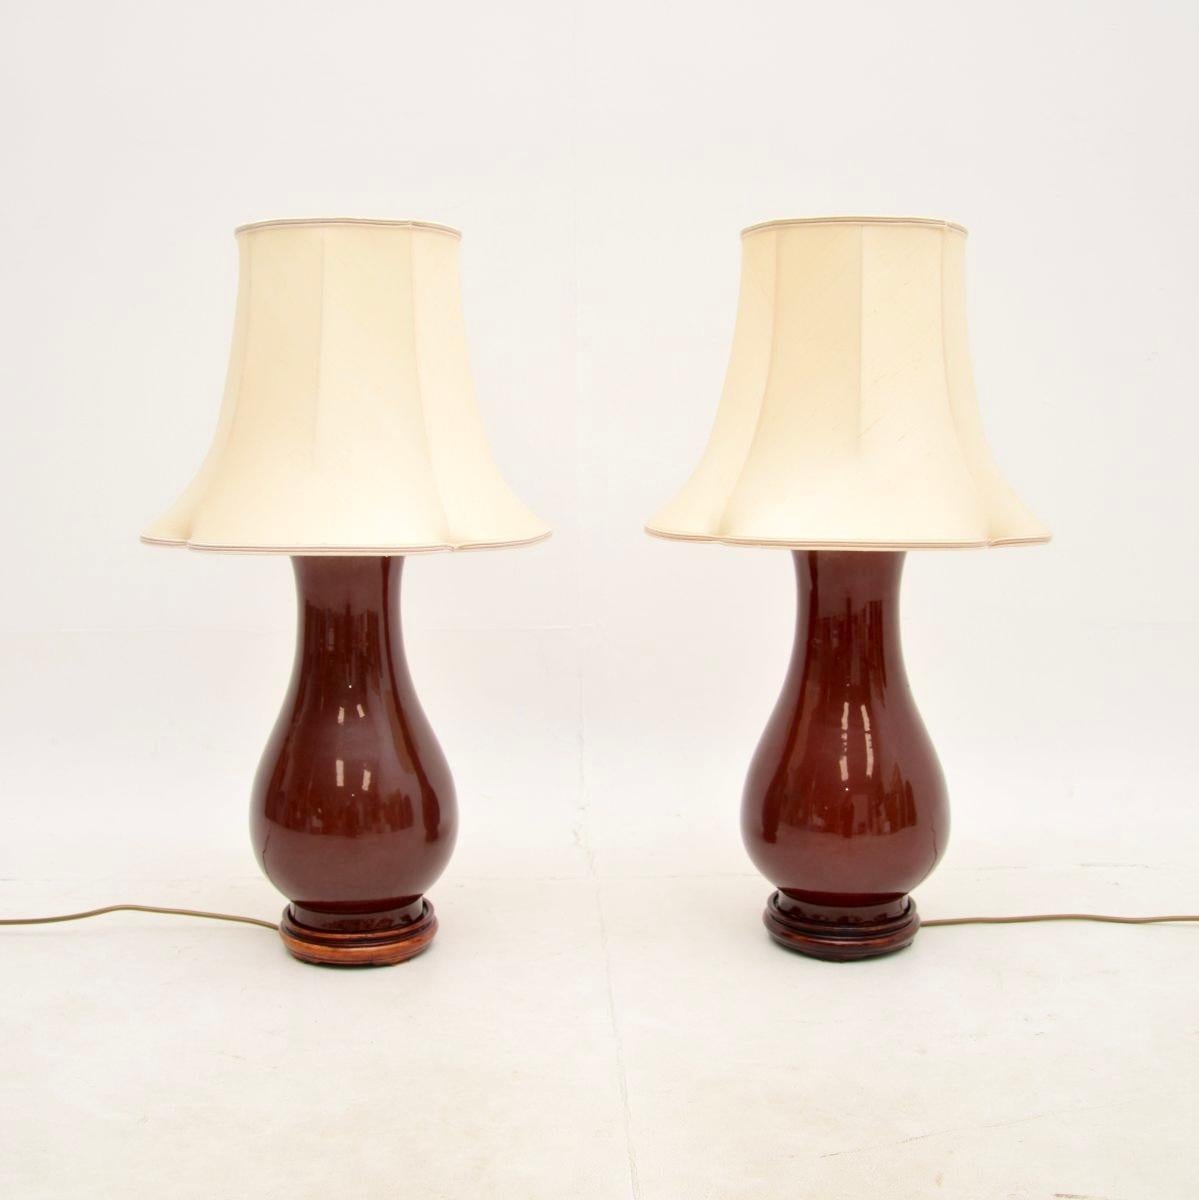 Une fantastique paire de lampes de table en céramique de style oriental. Fabriqués en Angleterre, ils datent des années 1970.

La qualité est exceptionnelle, la taille est grande et impressionnante. Nous les avons associées à une magnifique paire